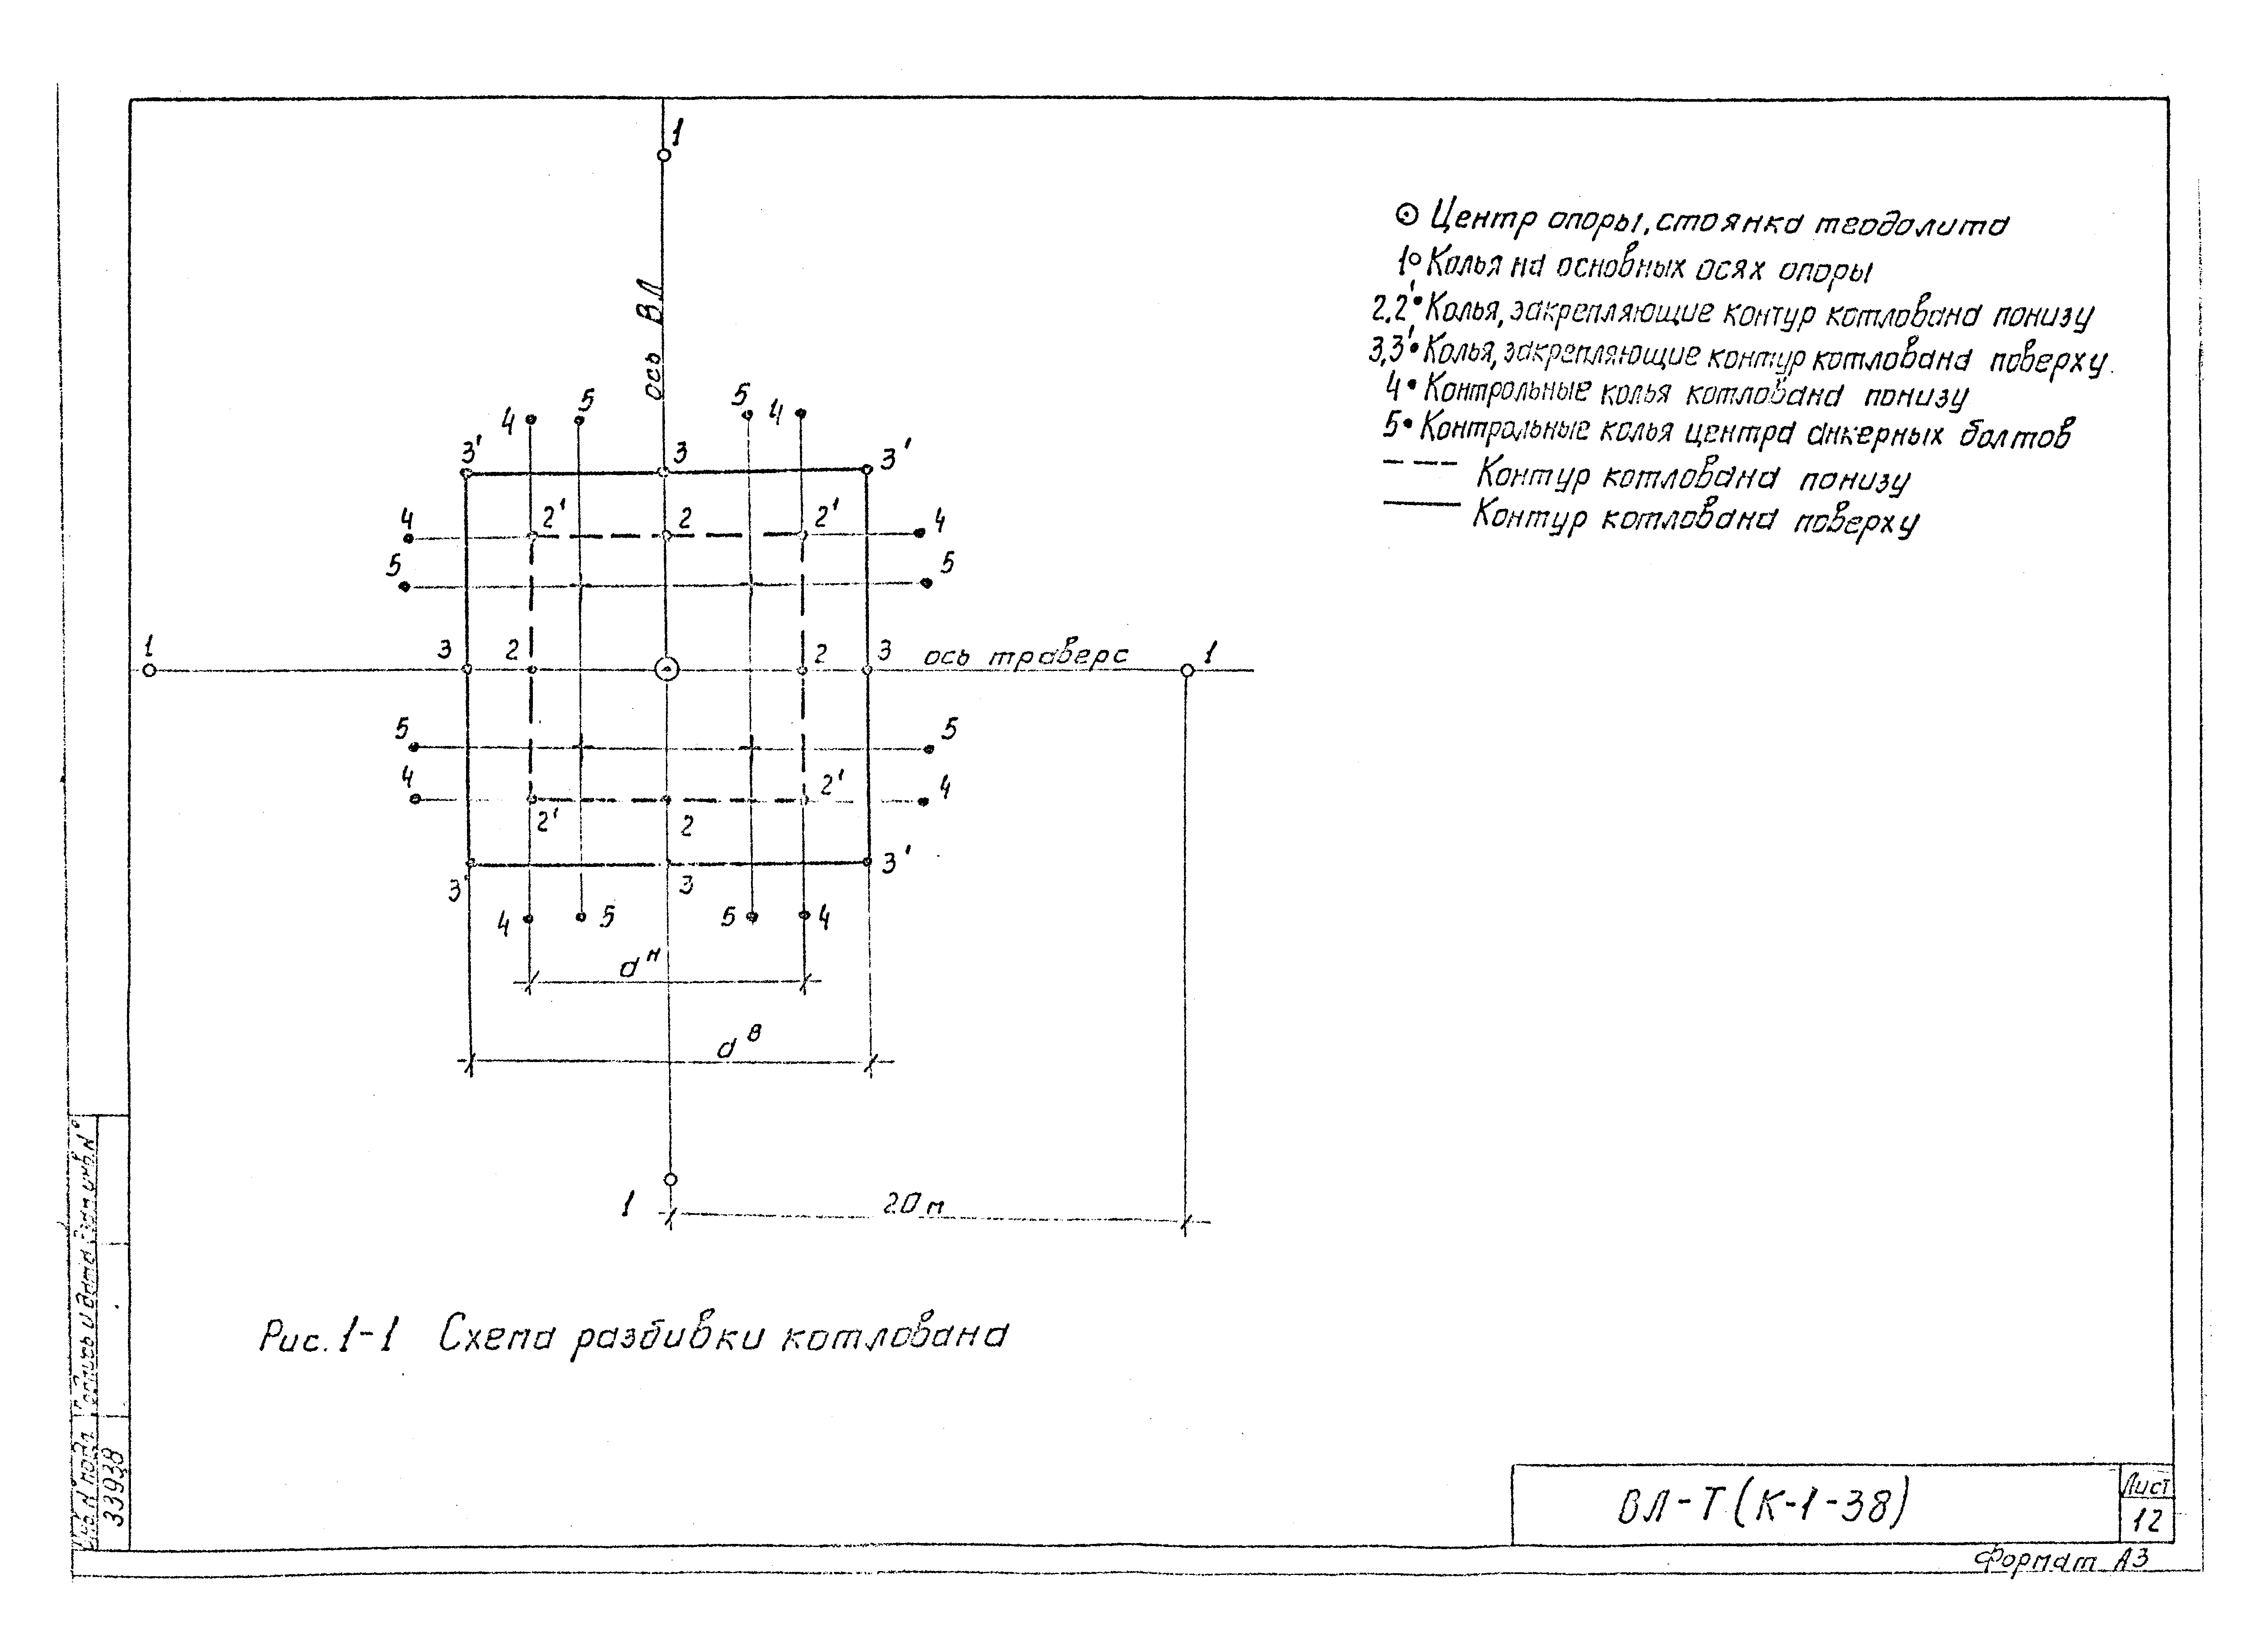 Технологическая карта К-1-38-1